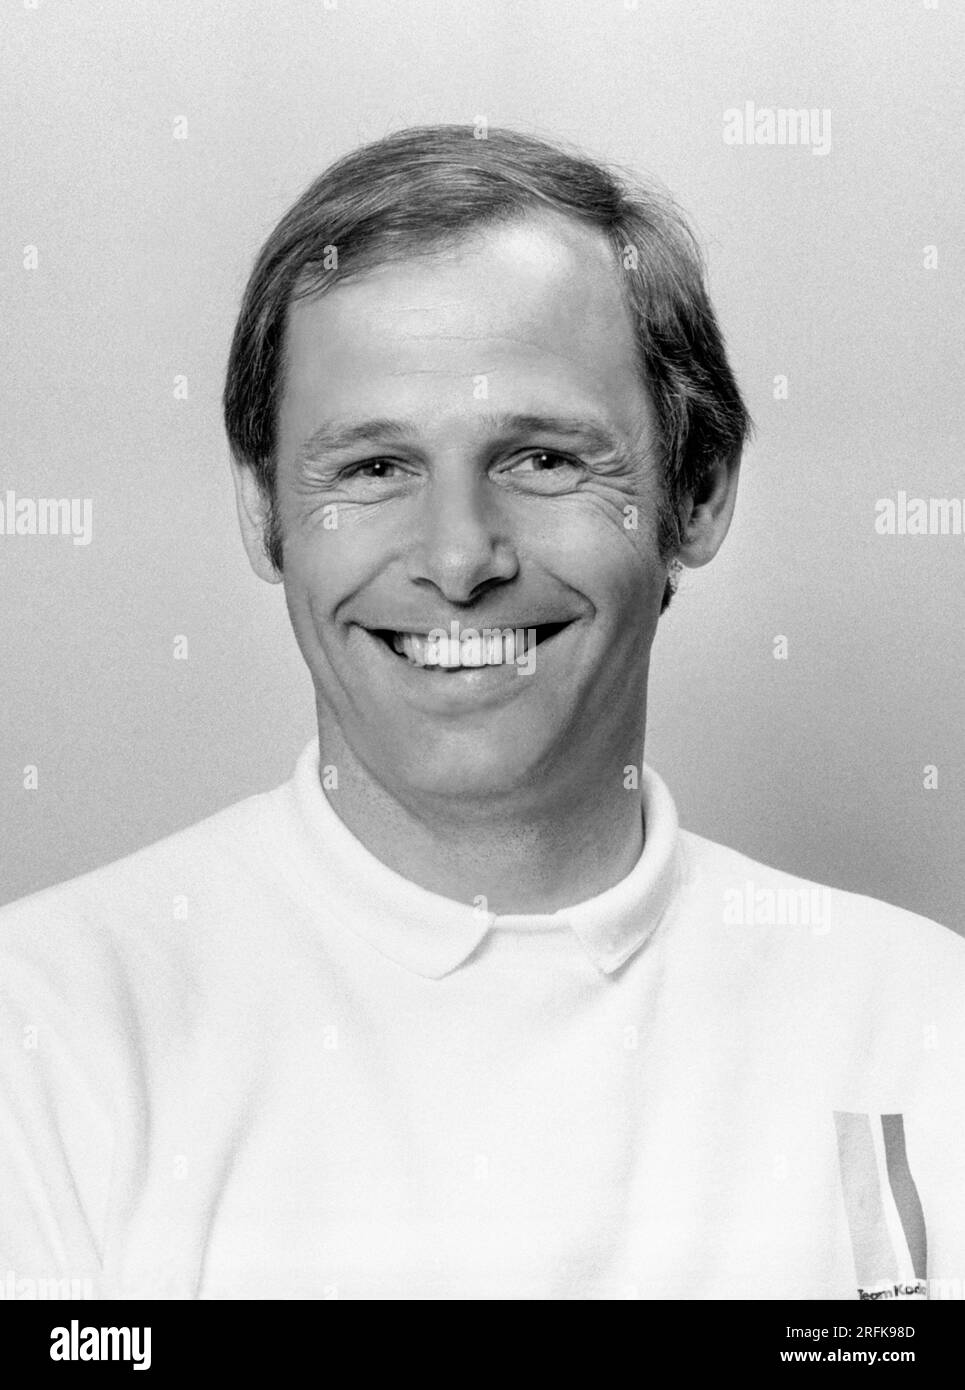 Anders Borgström entraîneur suédois de l'équipe nationale d'athlétisme Banque D'Images